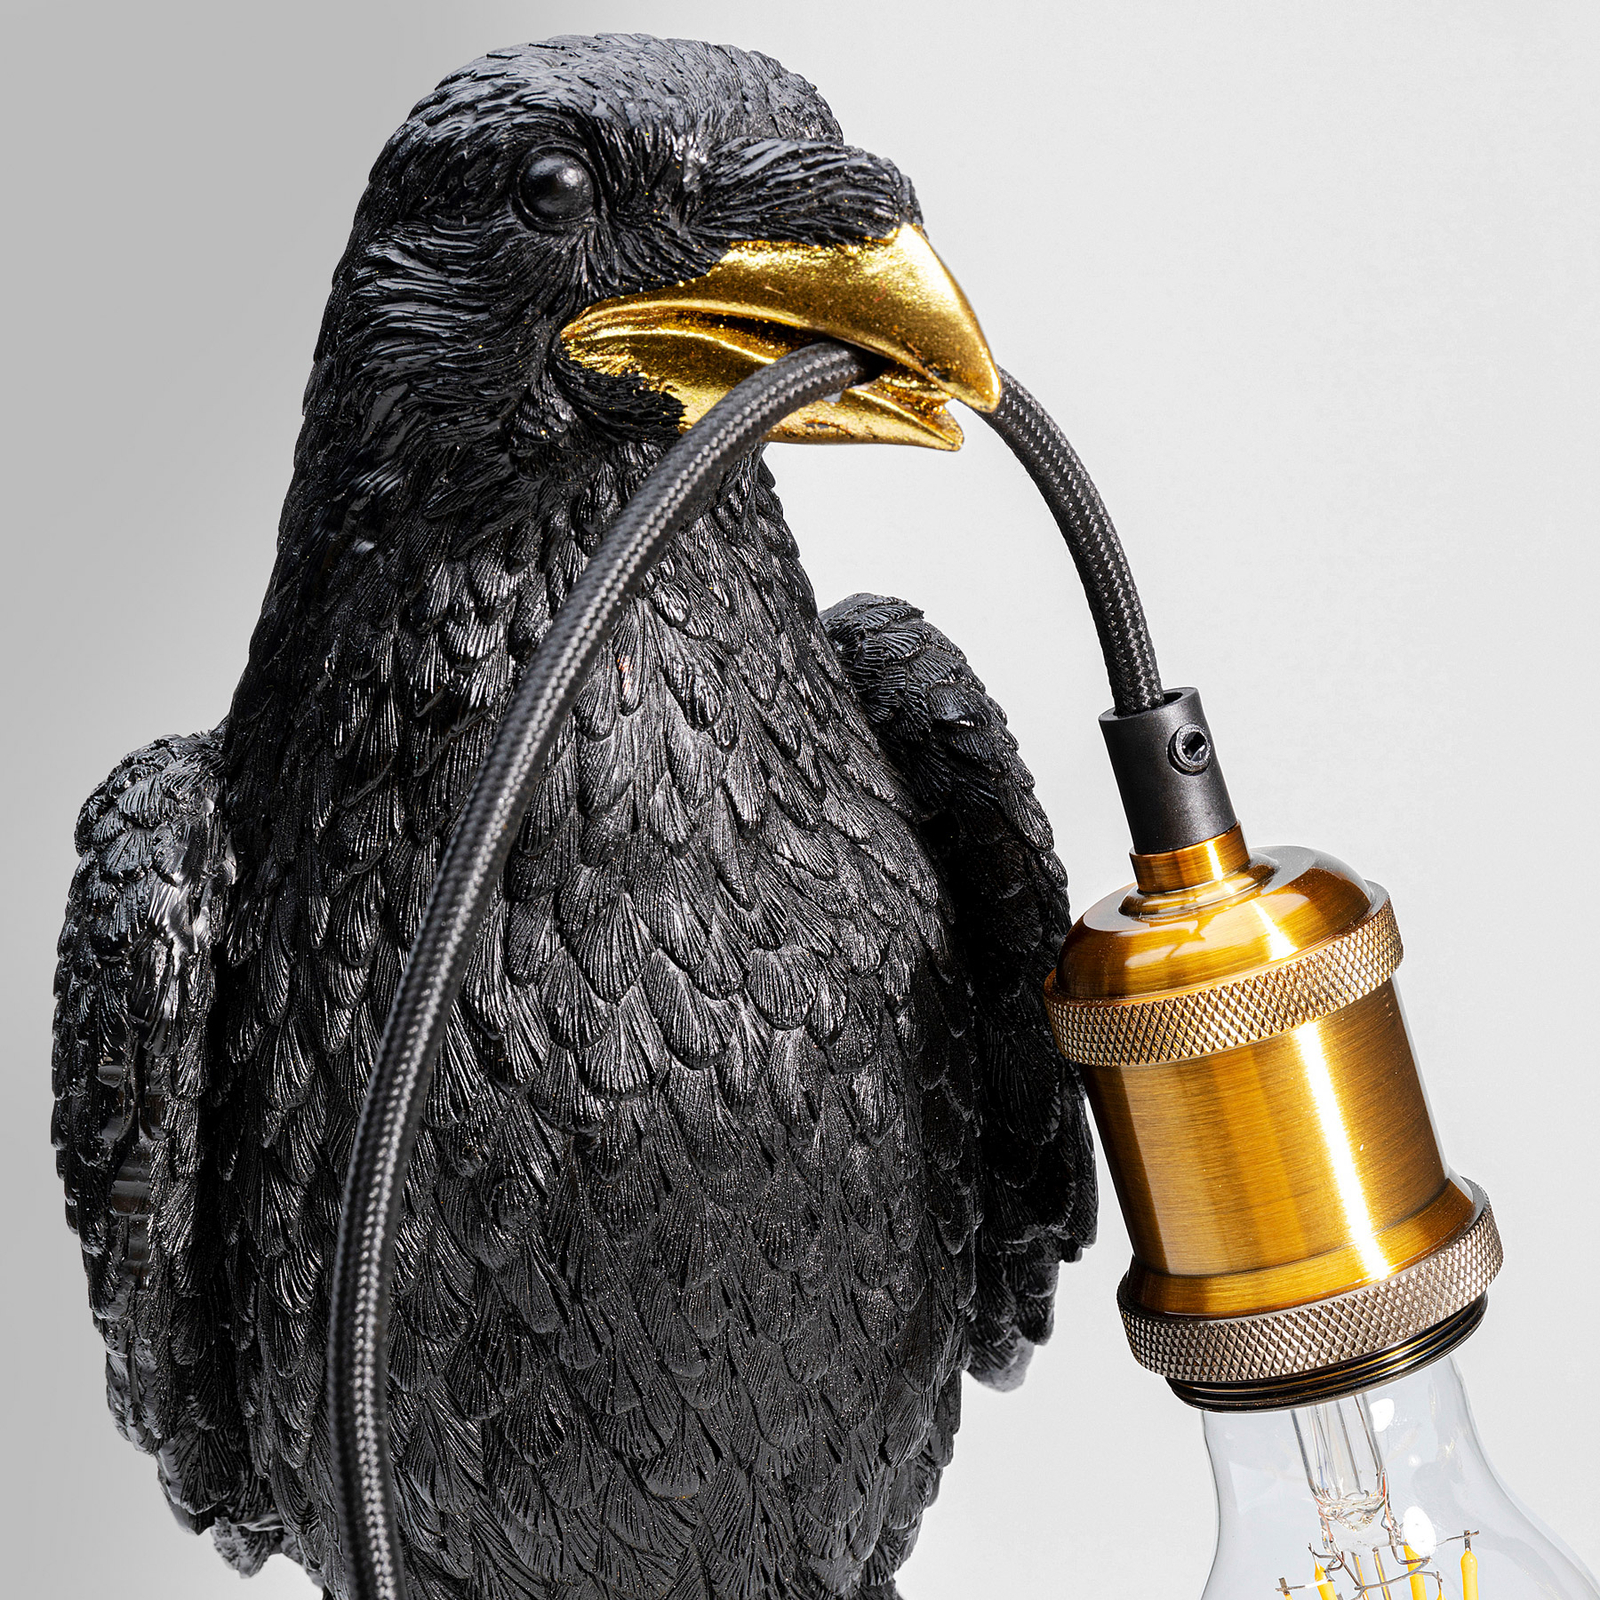 KARE Juodos spalvos stalinis šviestuvas "Animal Sitting Crow